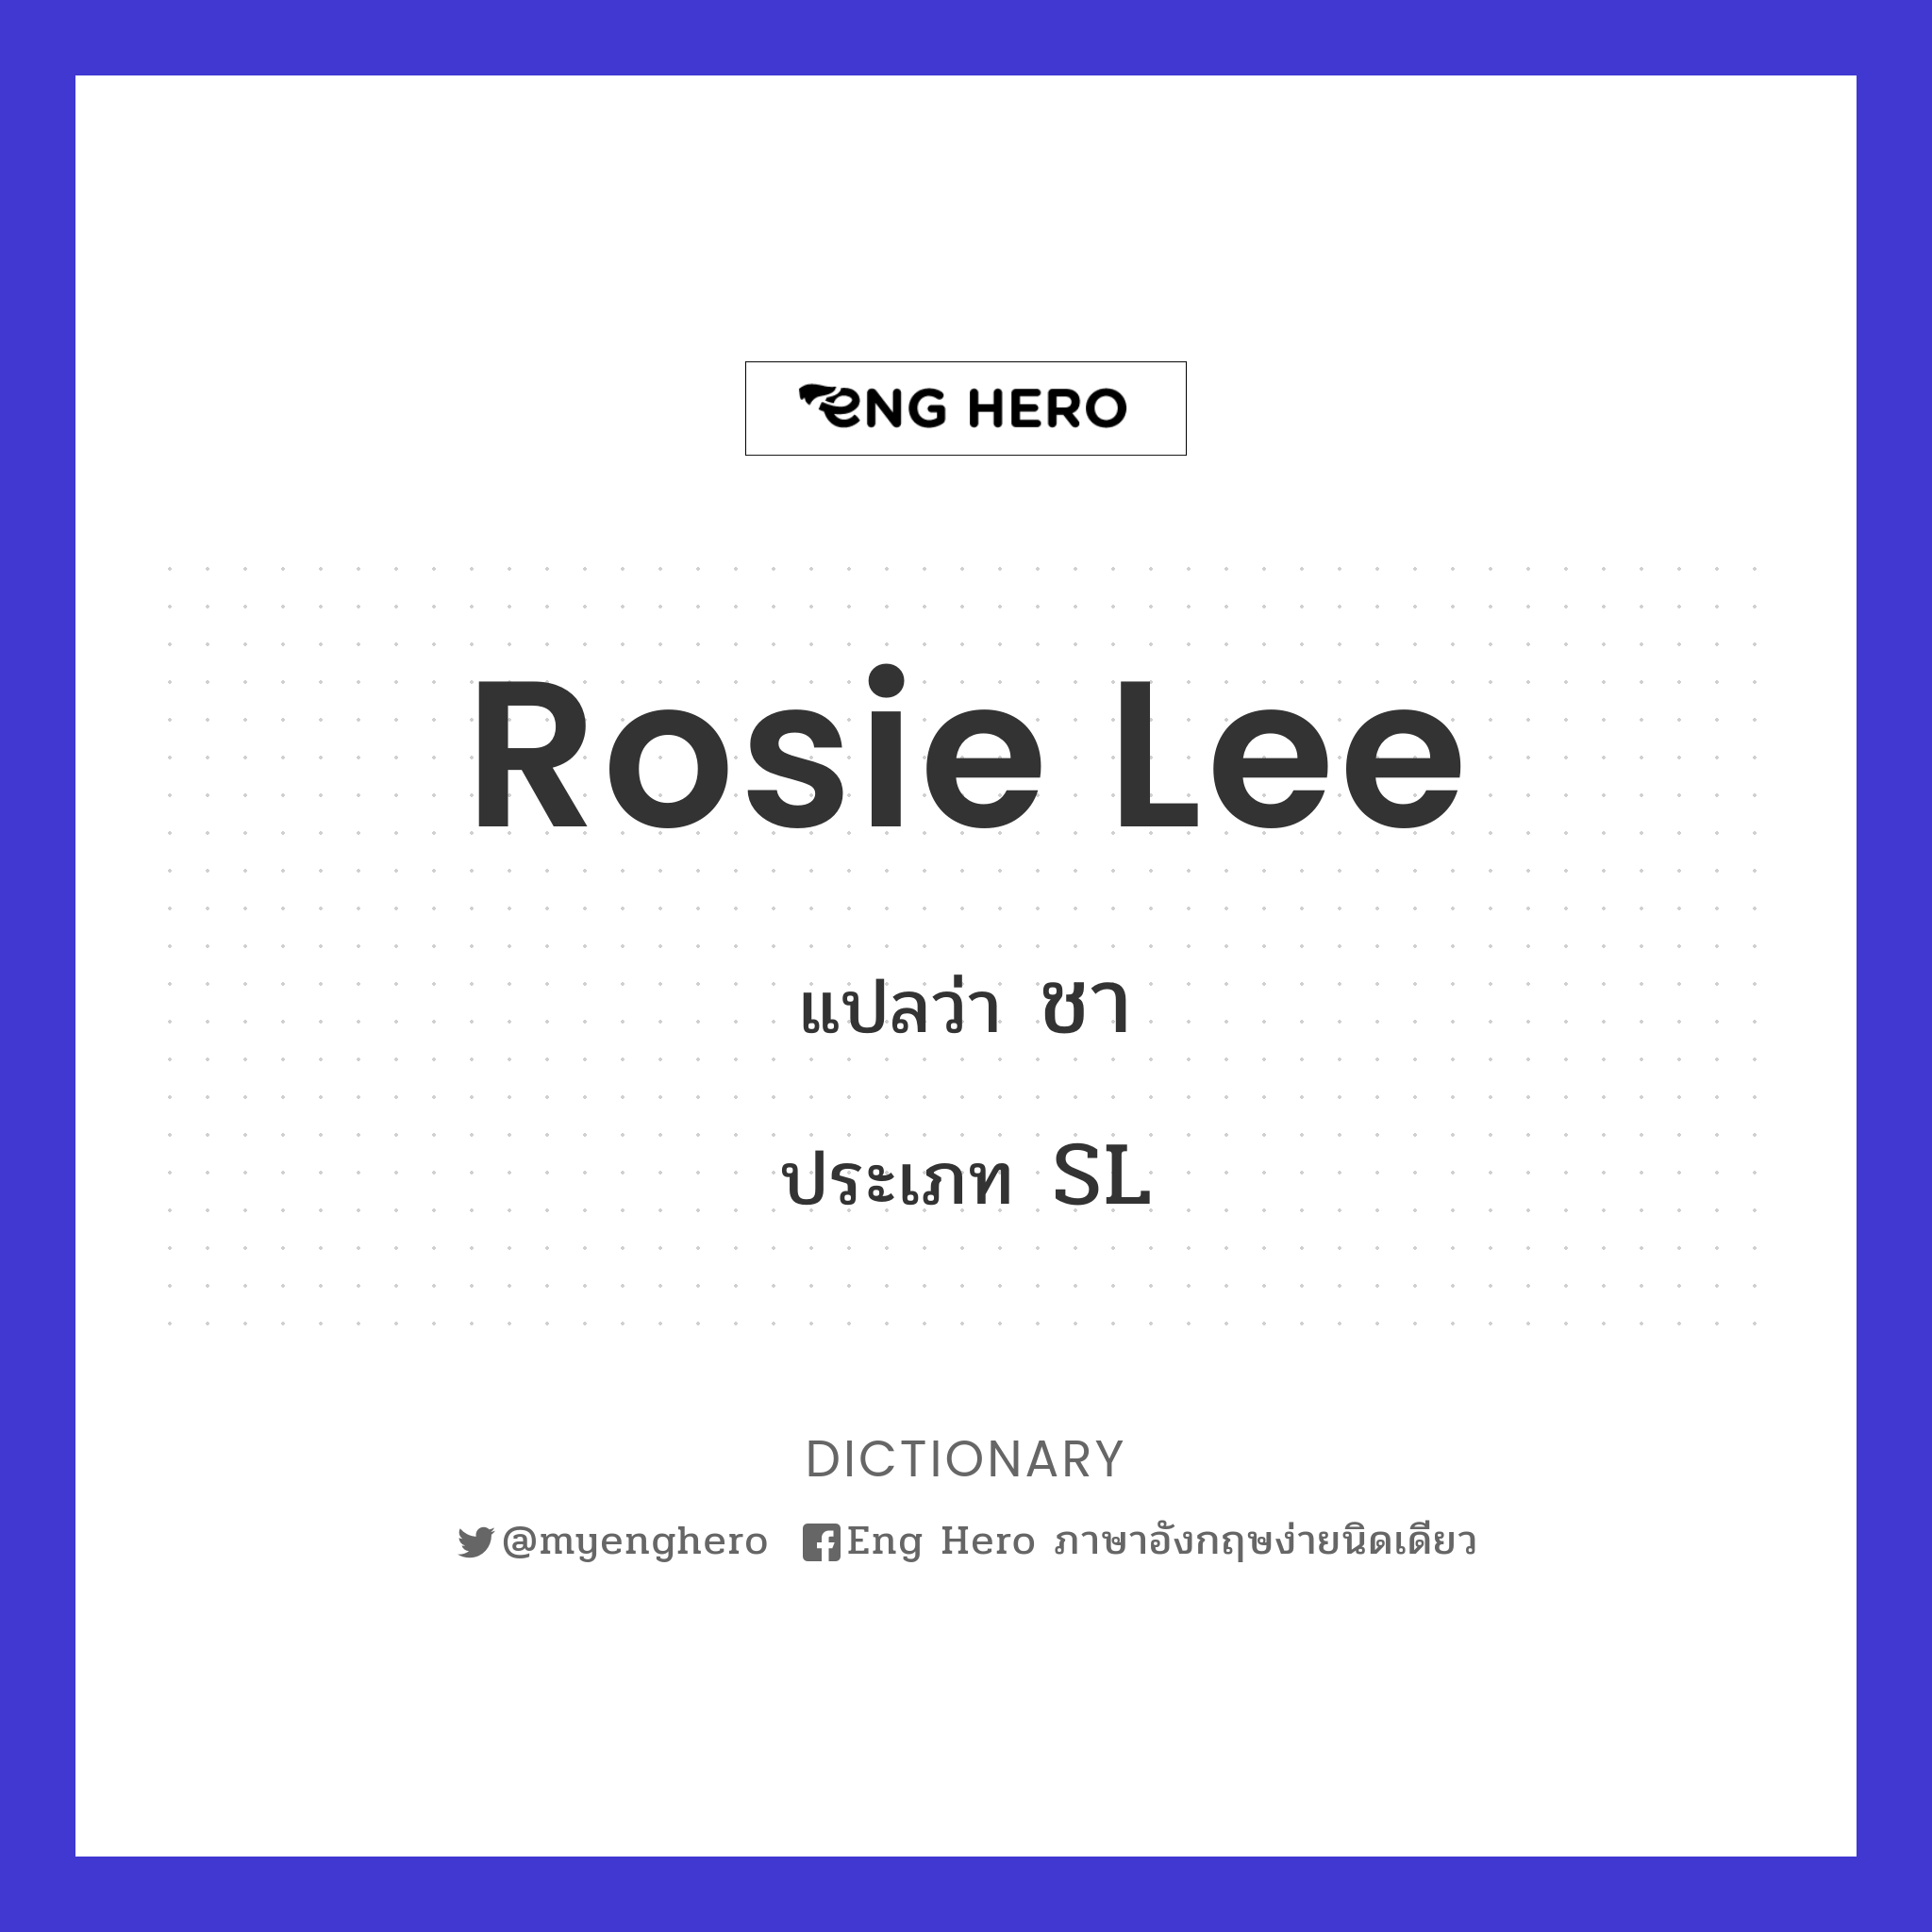 Rosie Lee